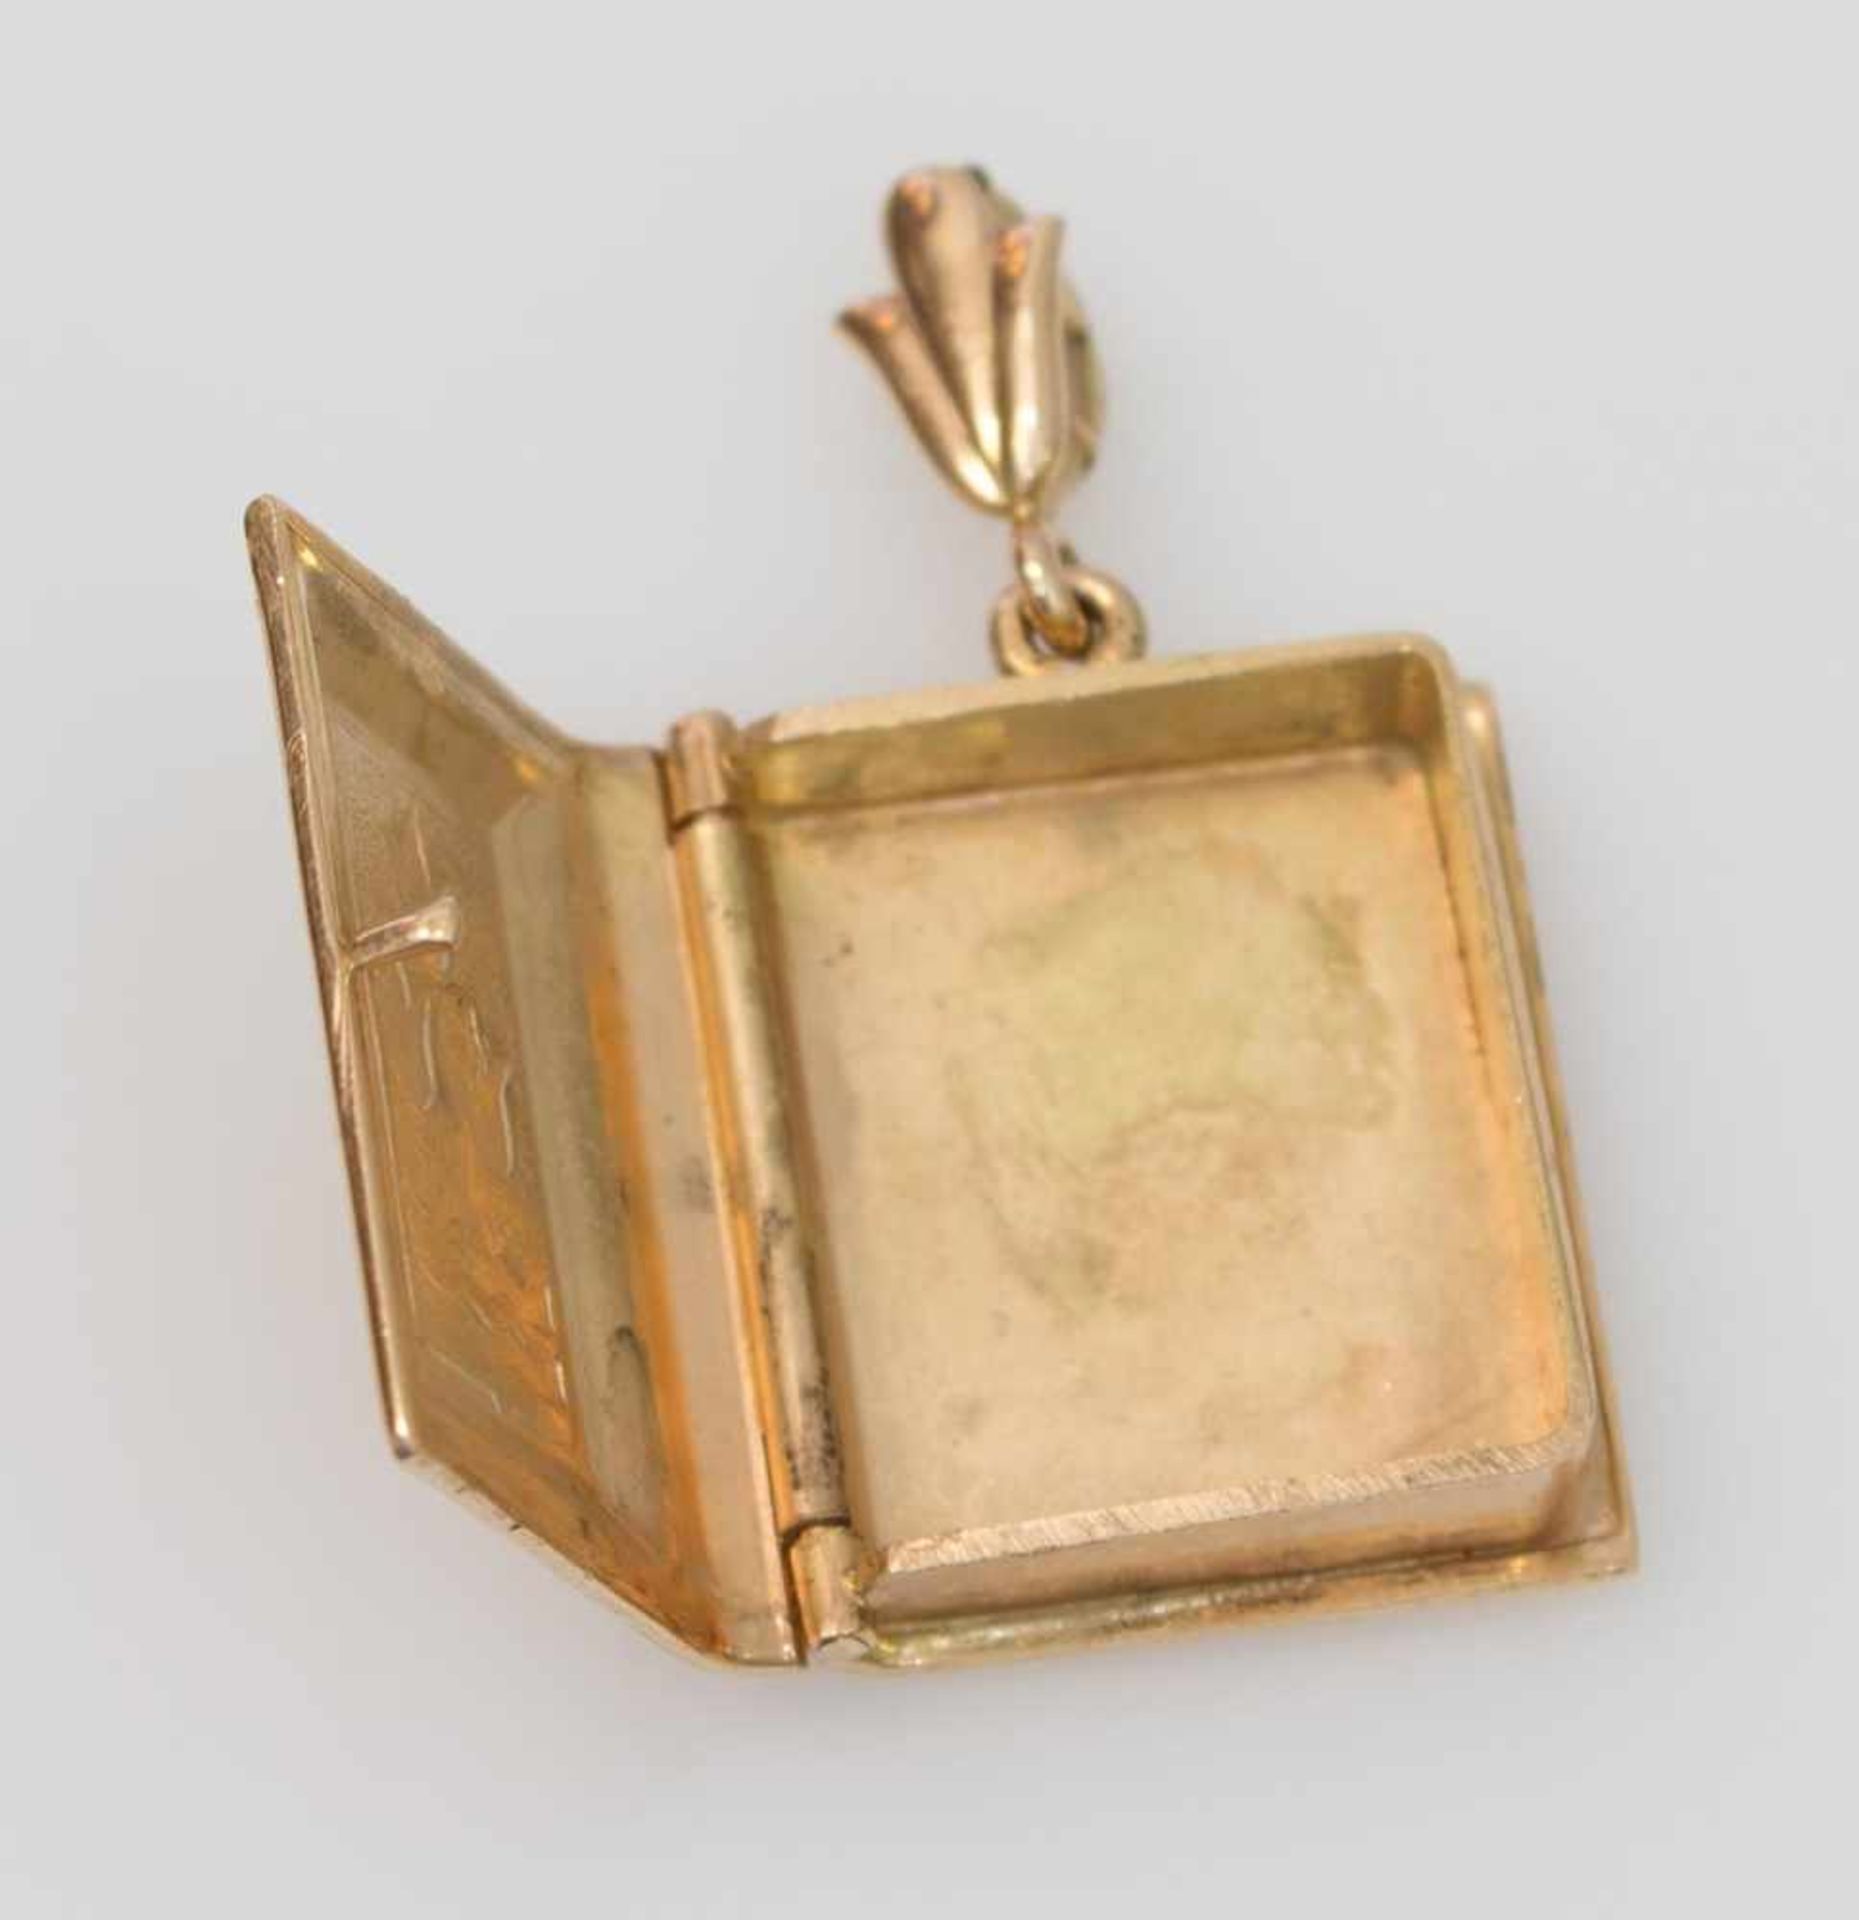 Kettenanhänger 585er GG, 9,8 g, Medaillon in Form eines Buches, Vorderseite mit Dekor, L. 3,5 cm - Bild 2 aus 3